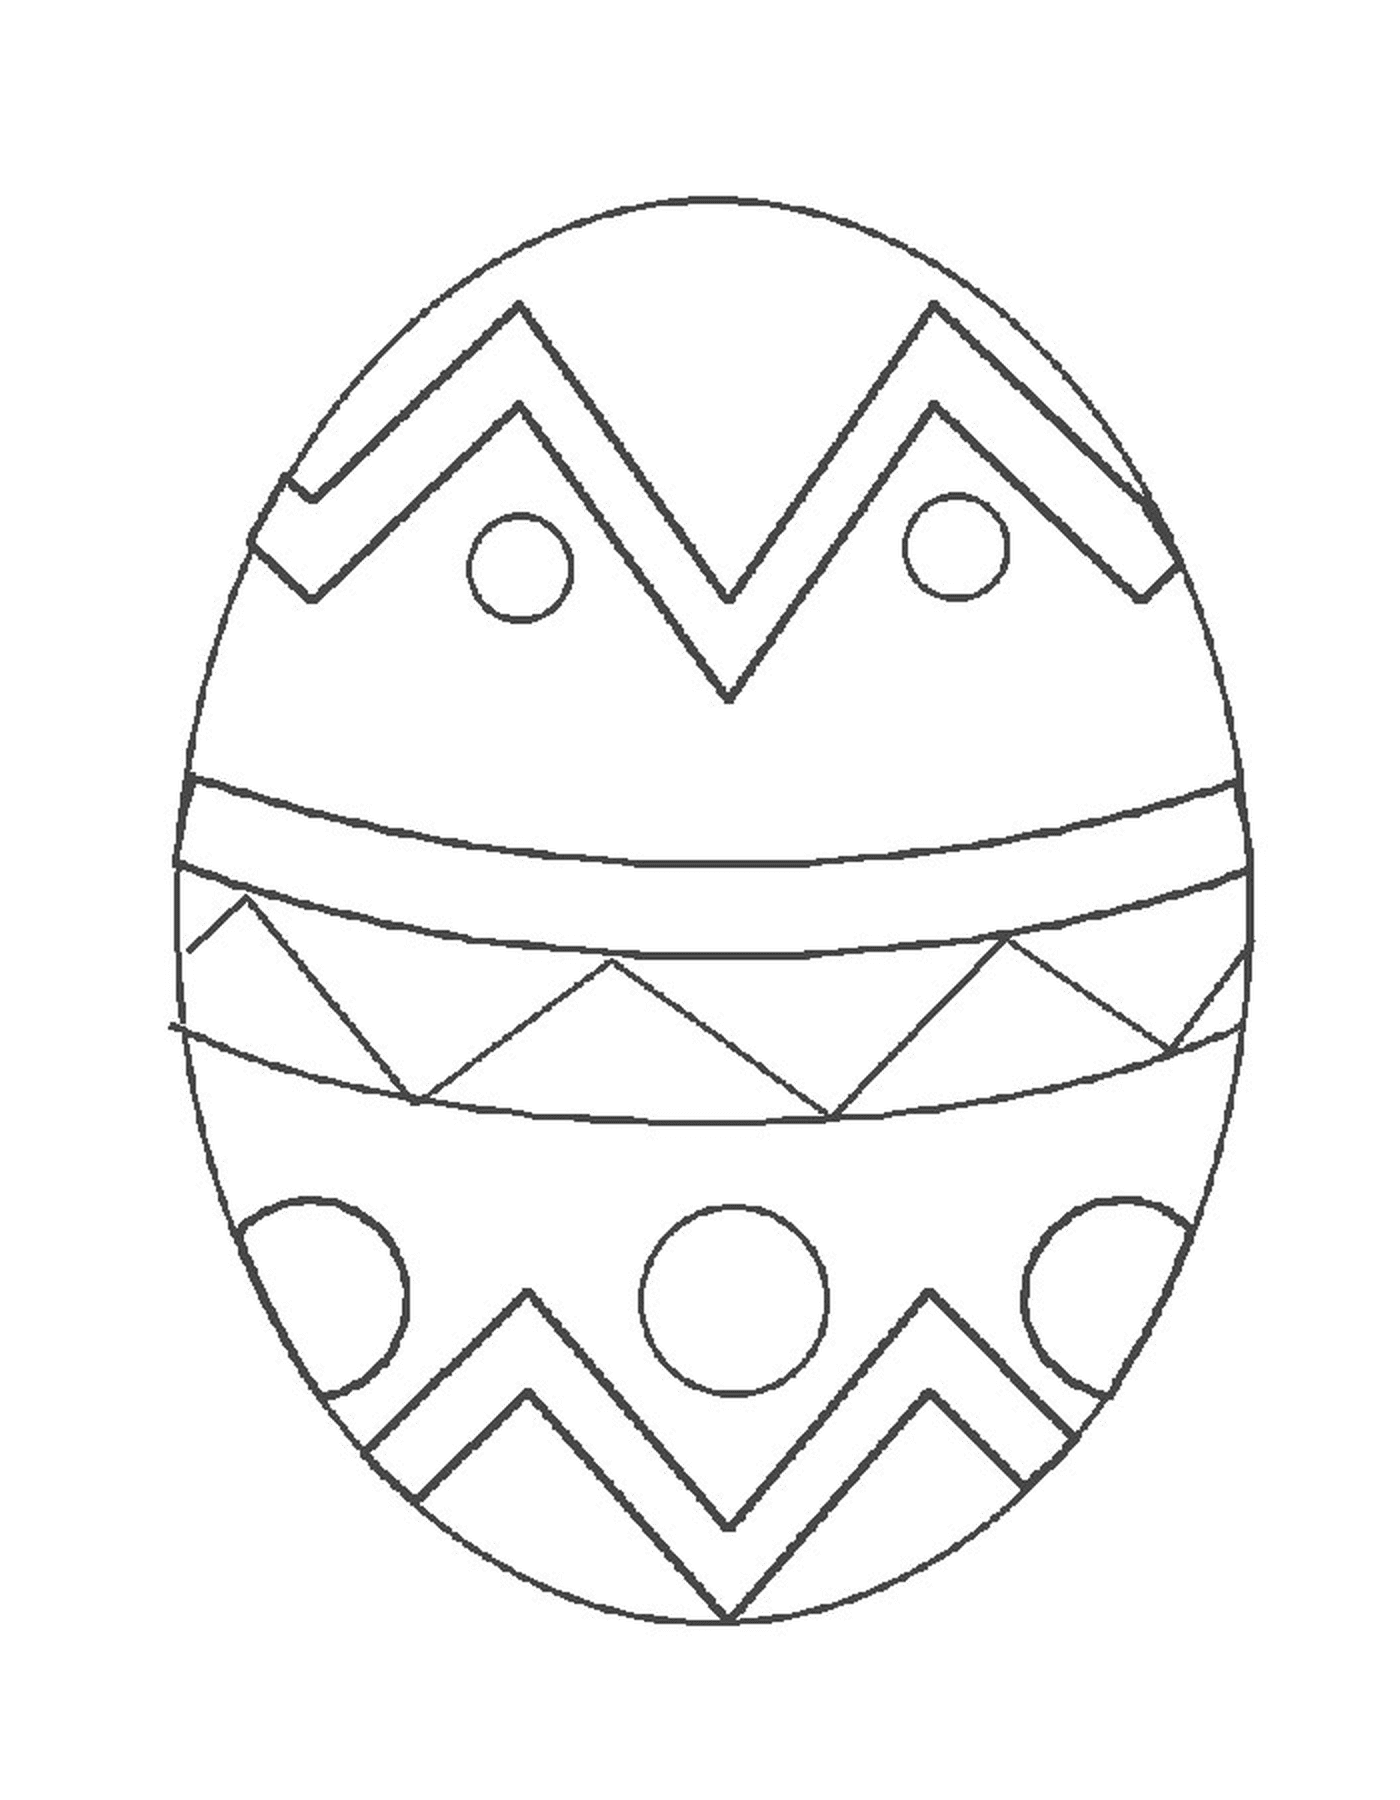  Ovo de Páscoa com desenho geométrico 